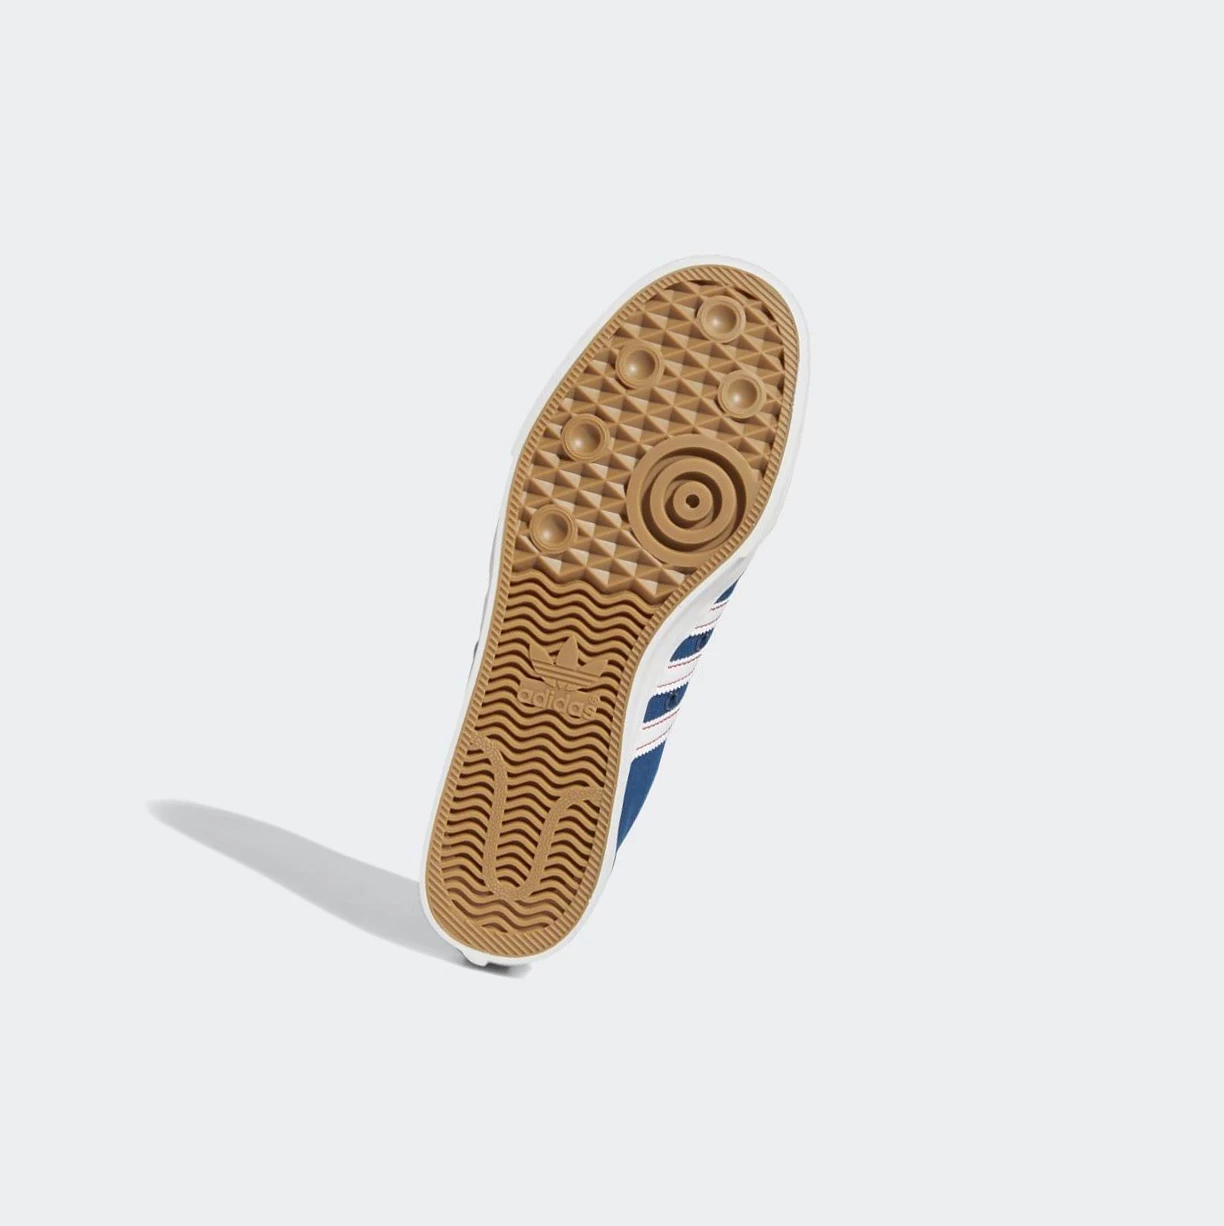 Originálne Topánky Adidas Nizza Panske Modre | 876SKYOSDEH